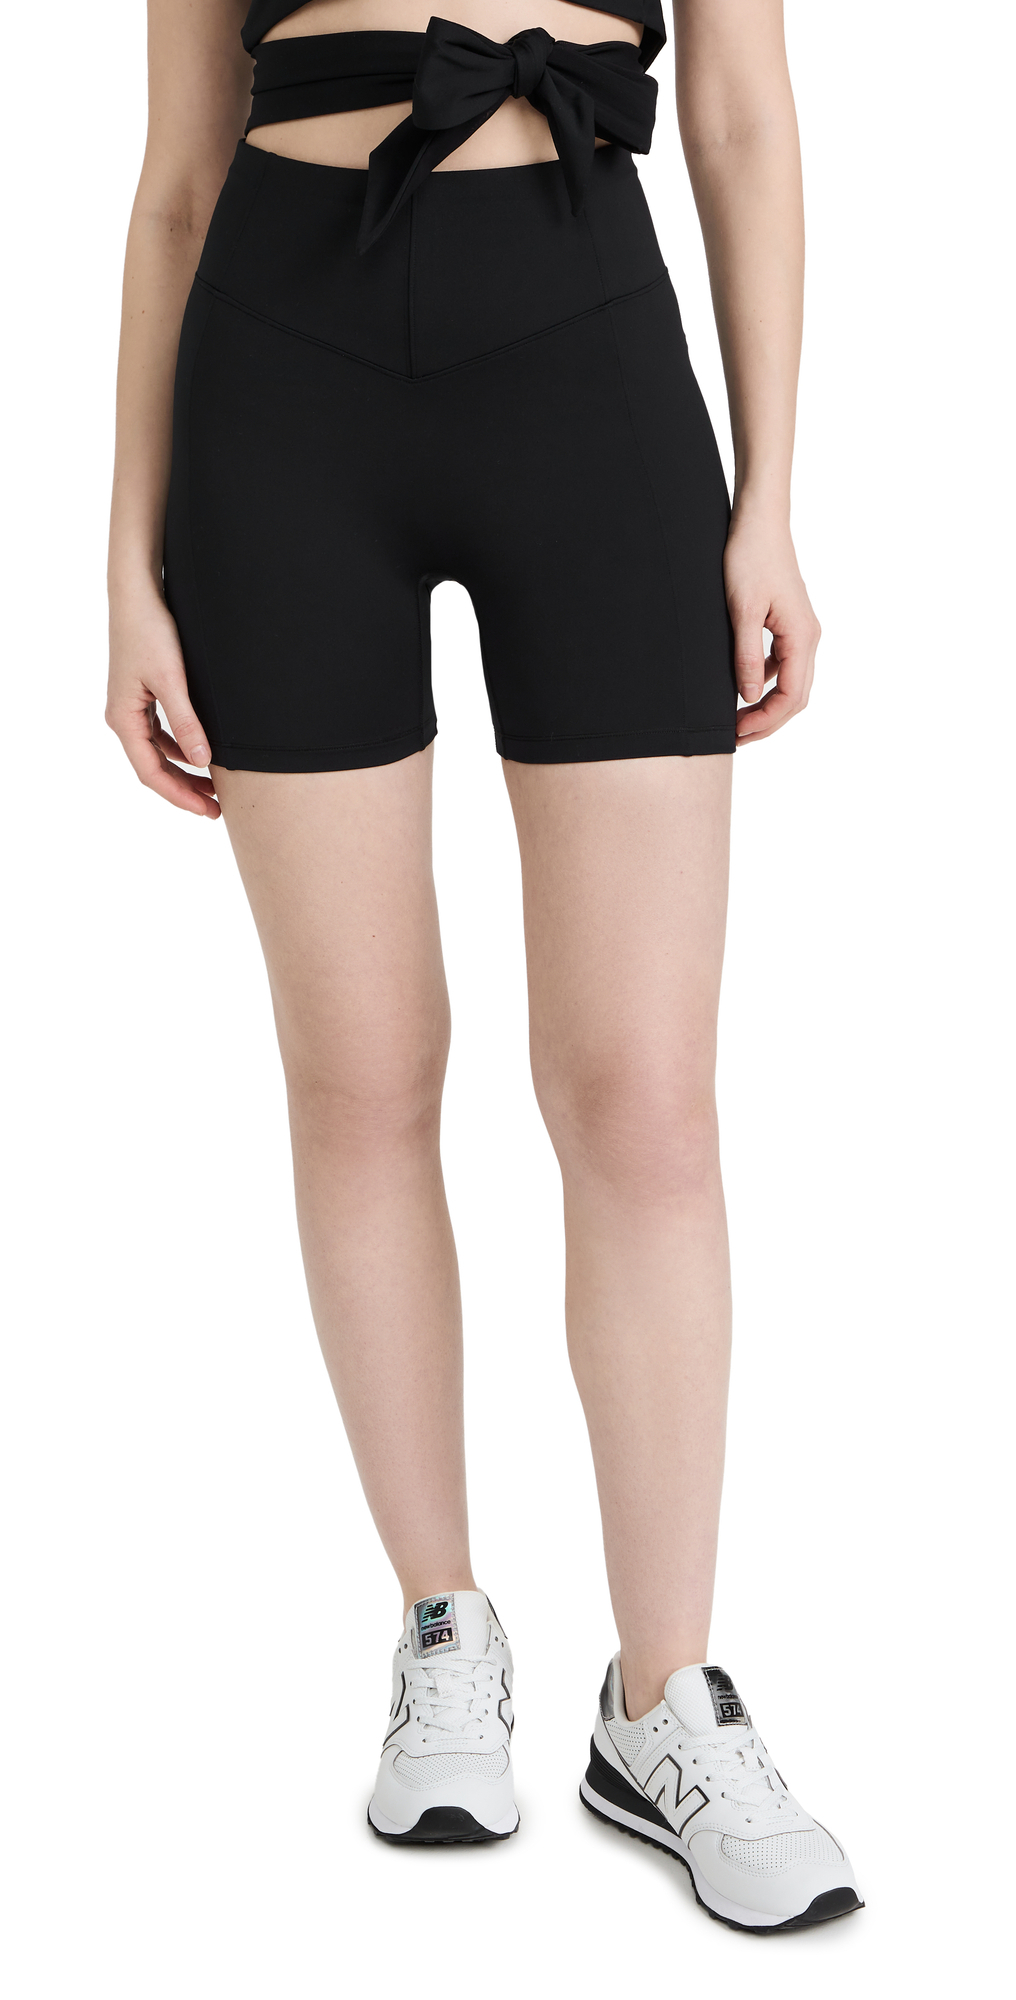 Le Ore Andria Biker Shorts in black